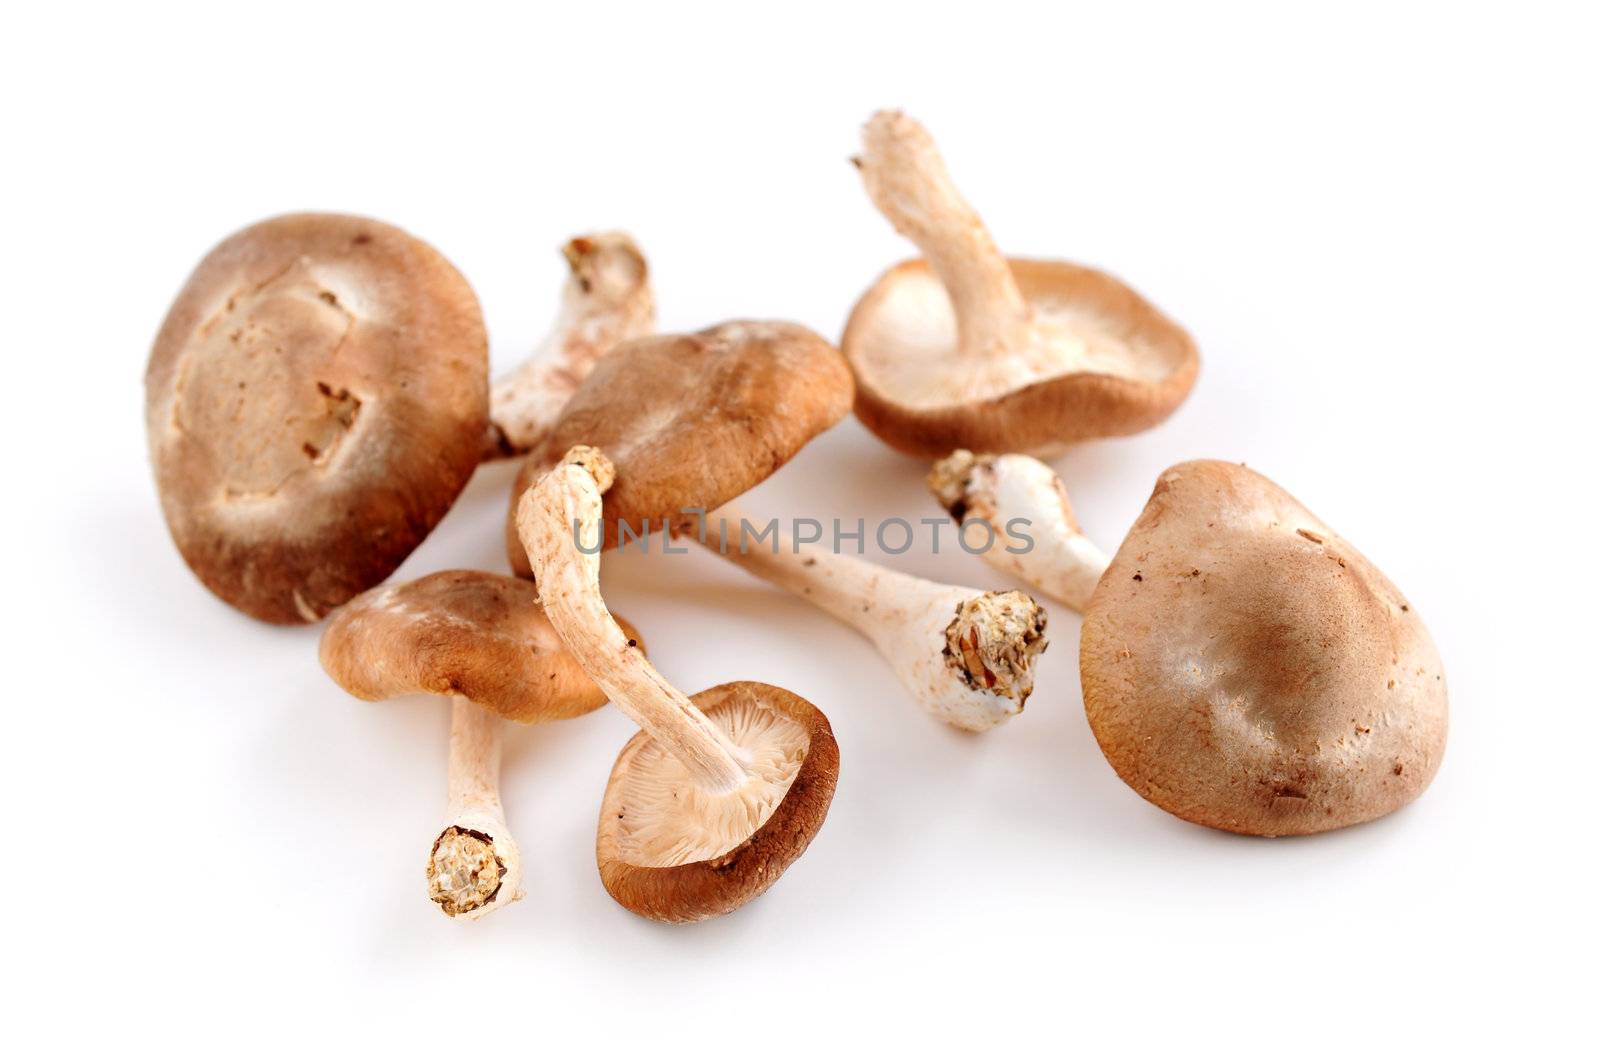 Shiitake mushrooms by elenathewise